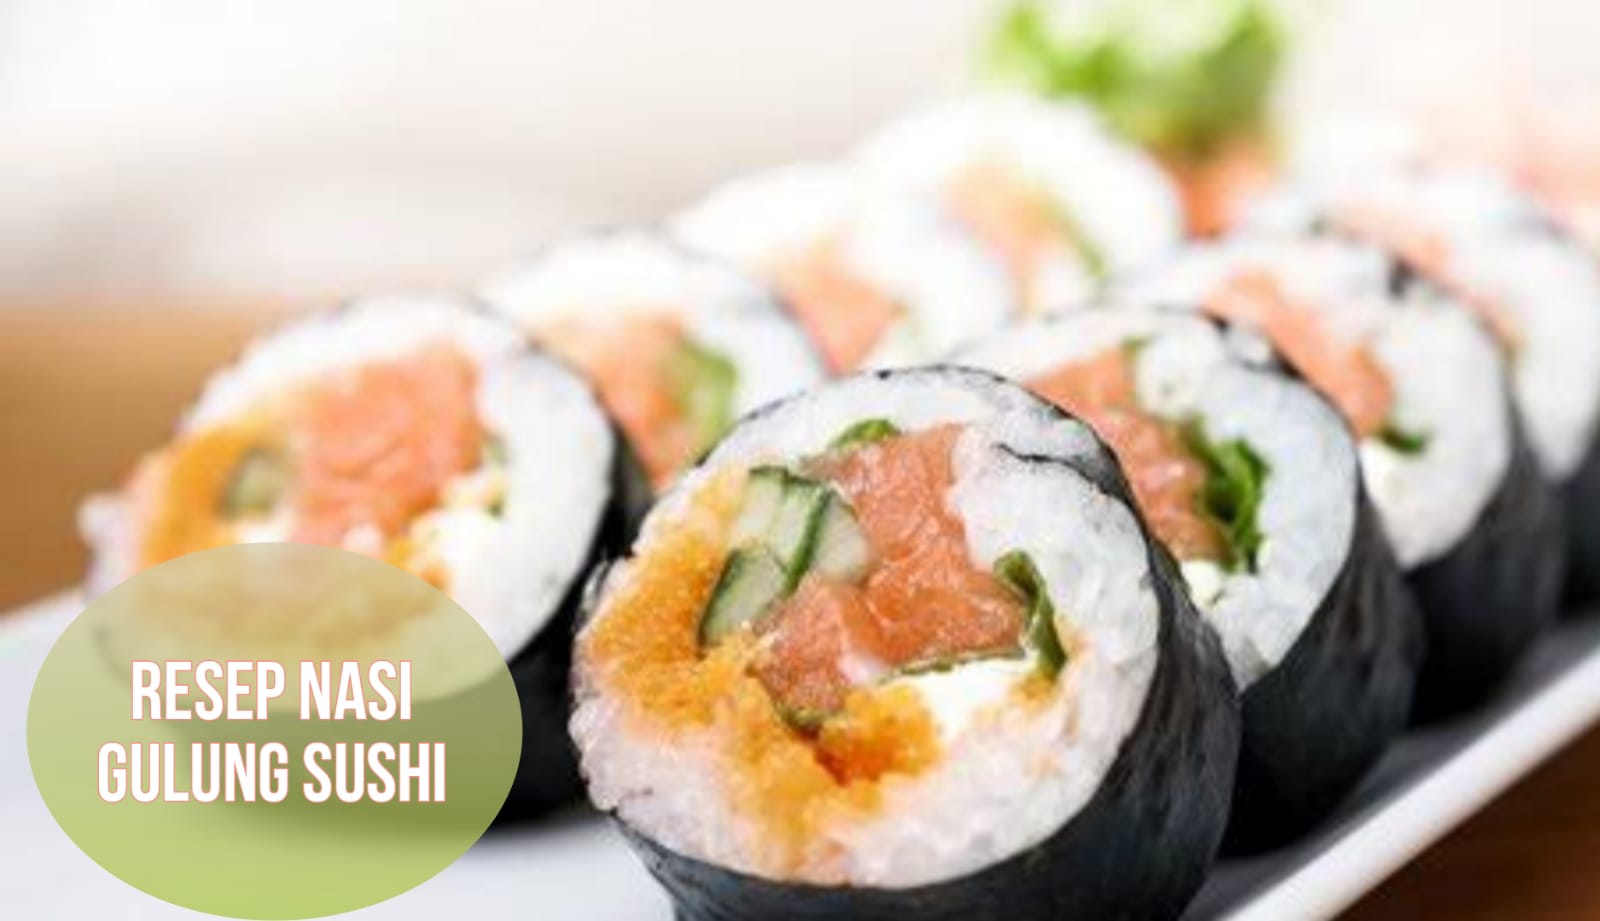 Resep Nasi Gulung Sushi, Makanan Sehat dan Lezat Cocok untuk Bekal Anak 